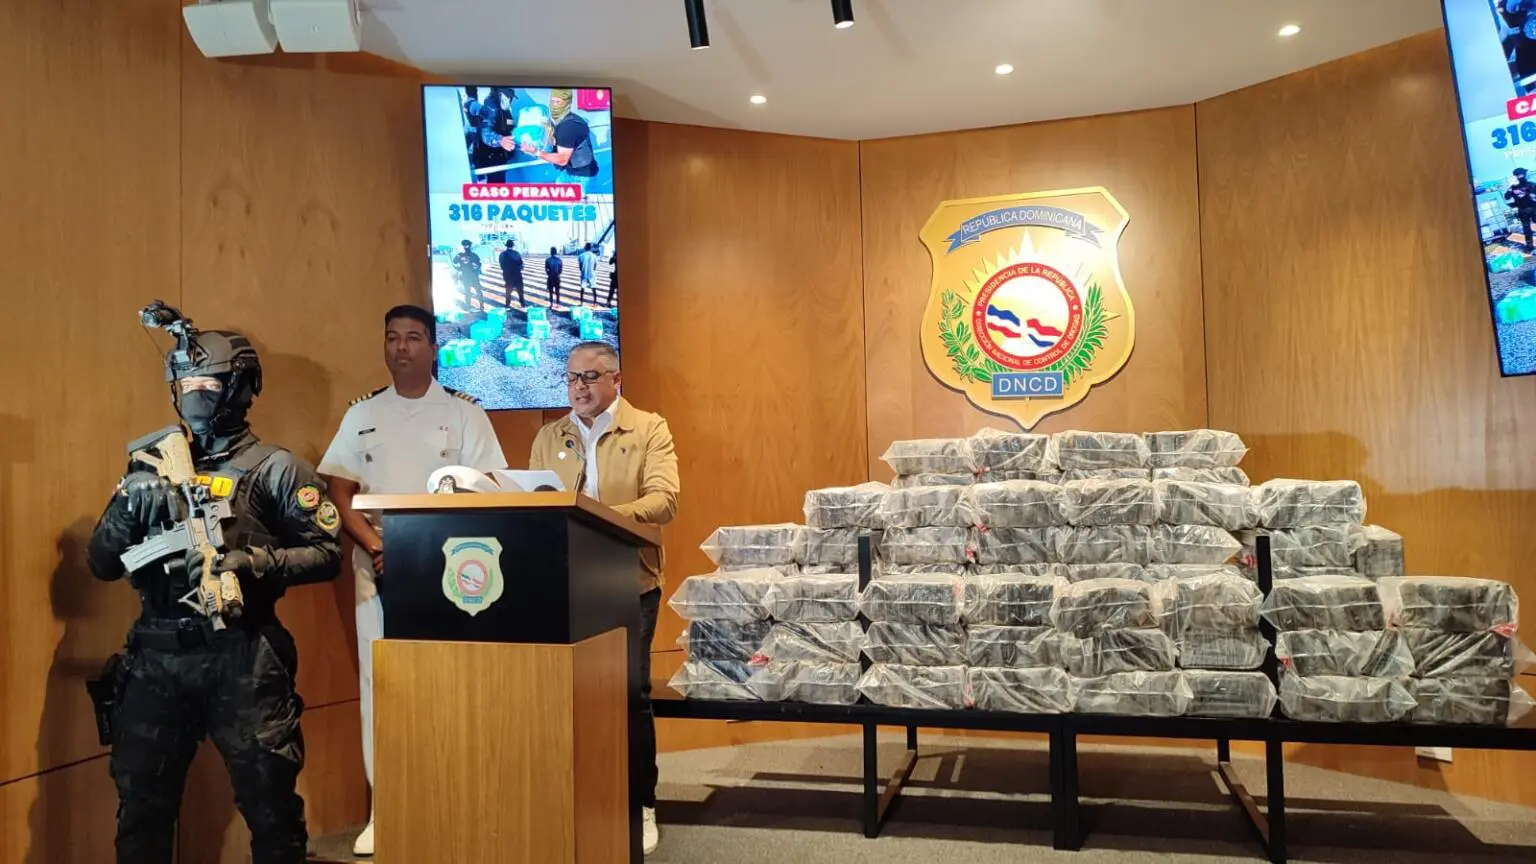 Intervienen lancha con 316 paquetes presumiblemente de cocaína en Peravia; tres personas arrestadas